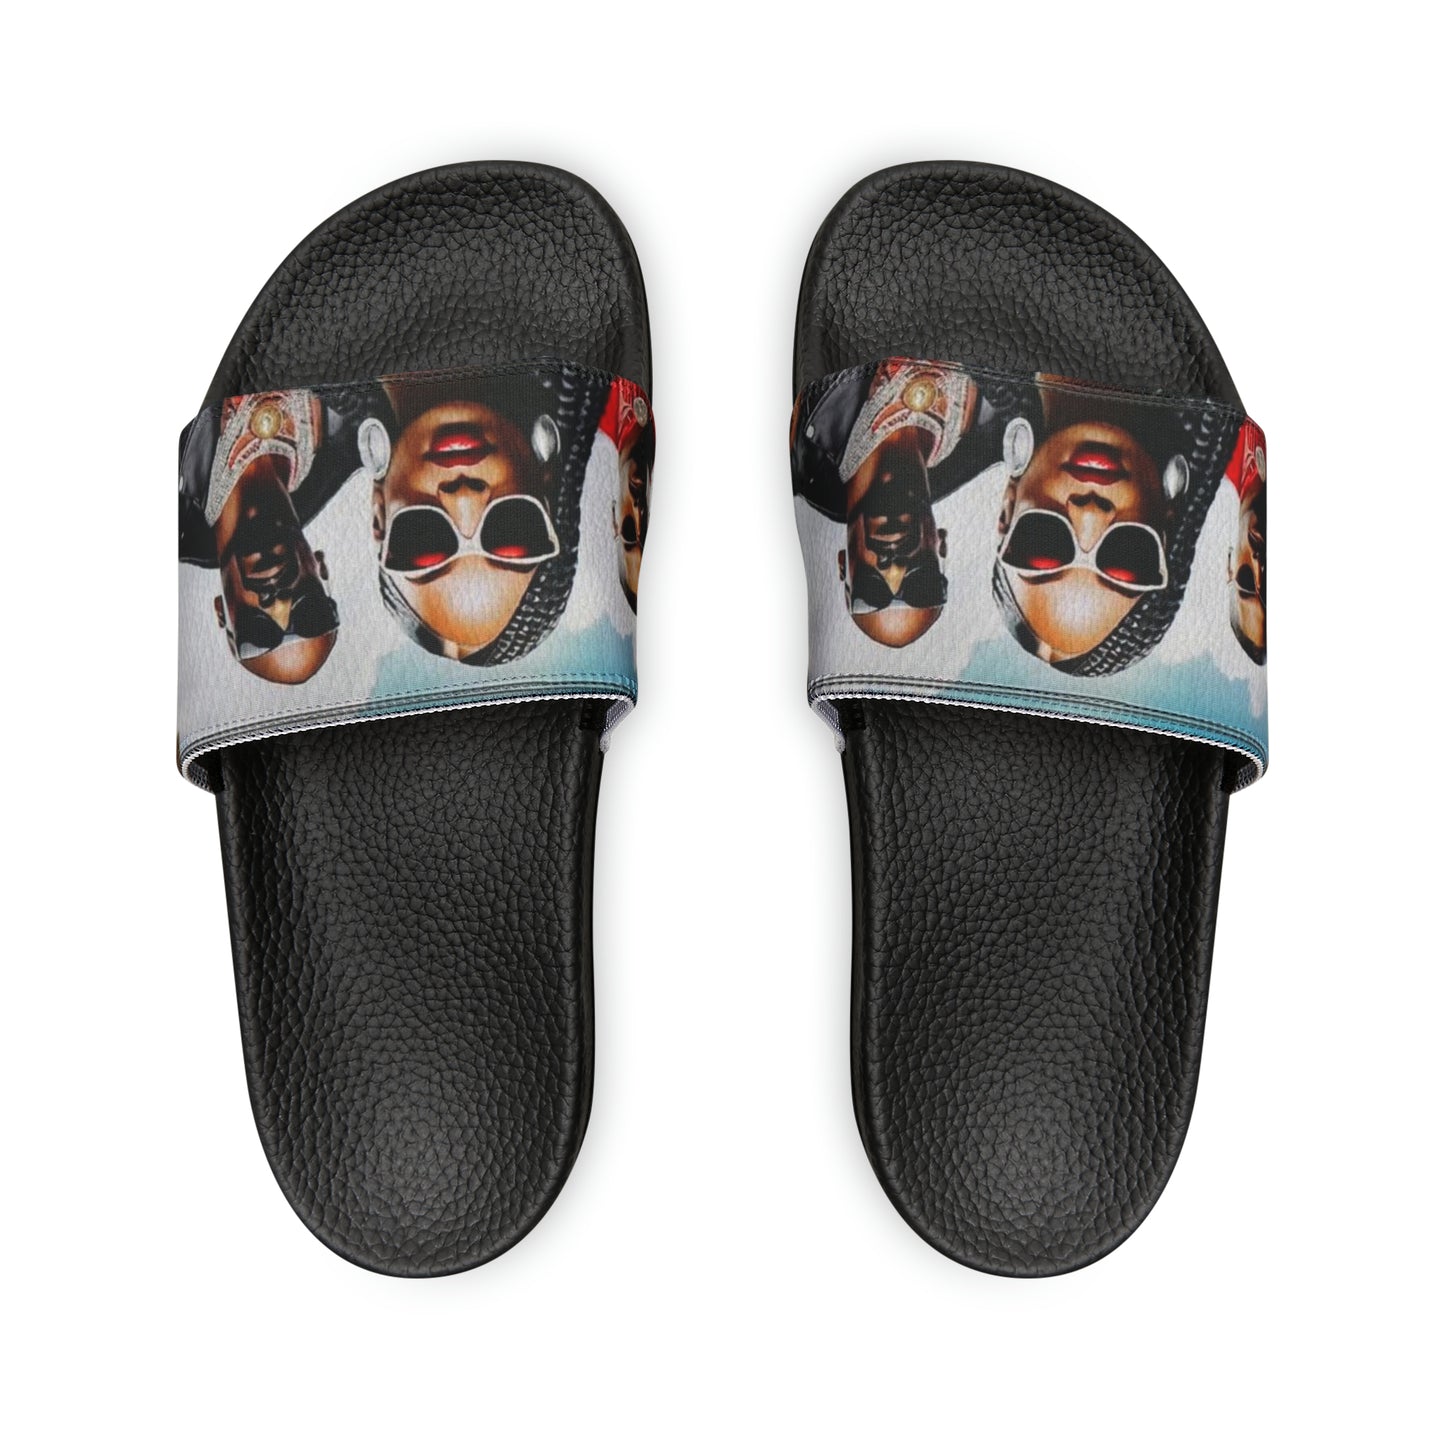 R_RH Luiiloviie Friends Men's Slide Sandals